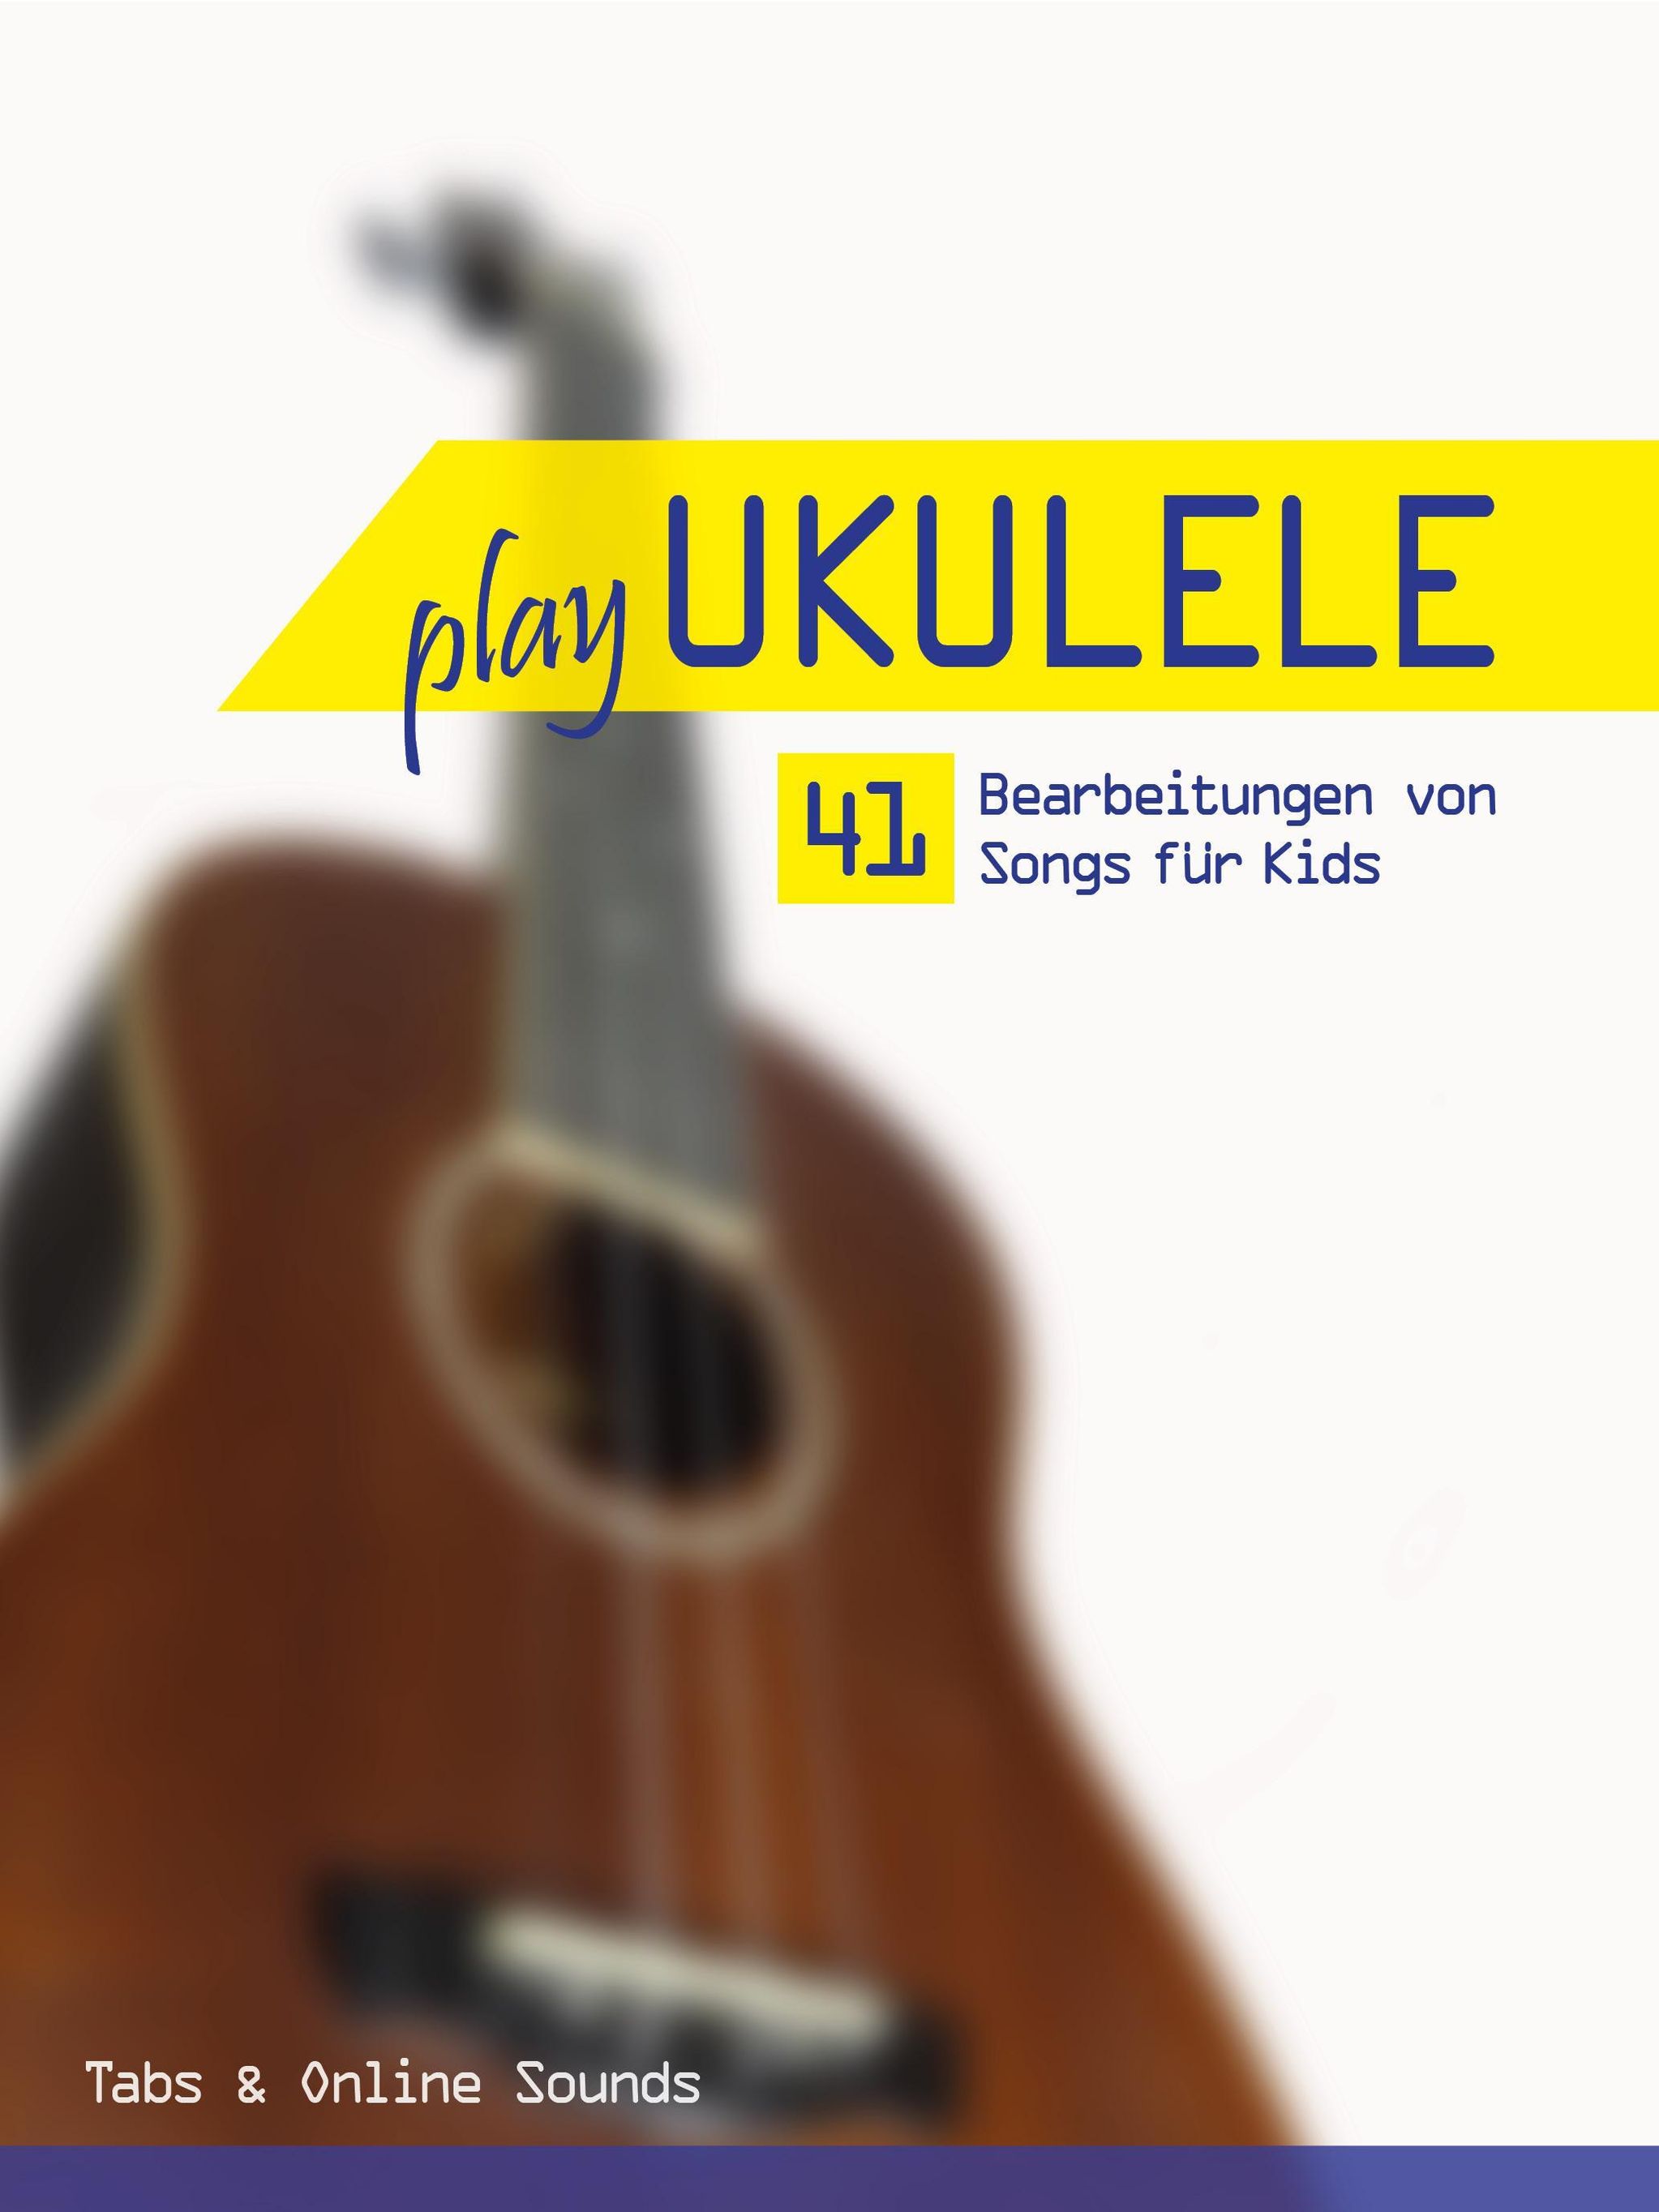 Play Ukulele - 41 Bearbeitungen von Songs für Kids eBook v. Reynhard Boegl  u. weitere | Weltbild